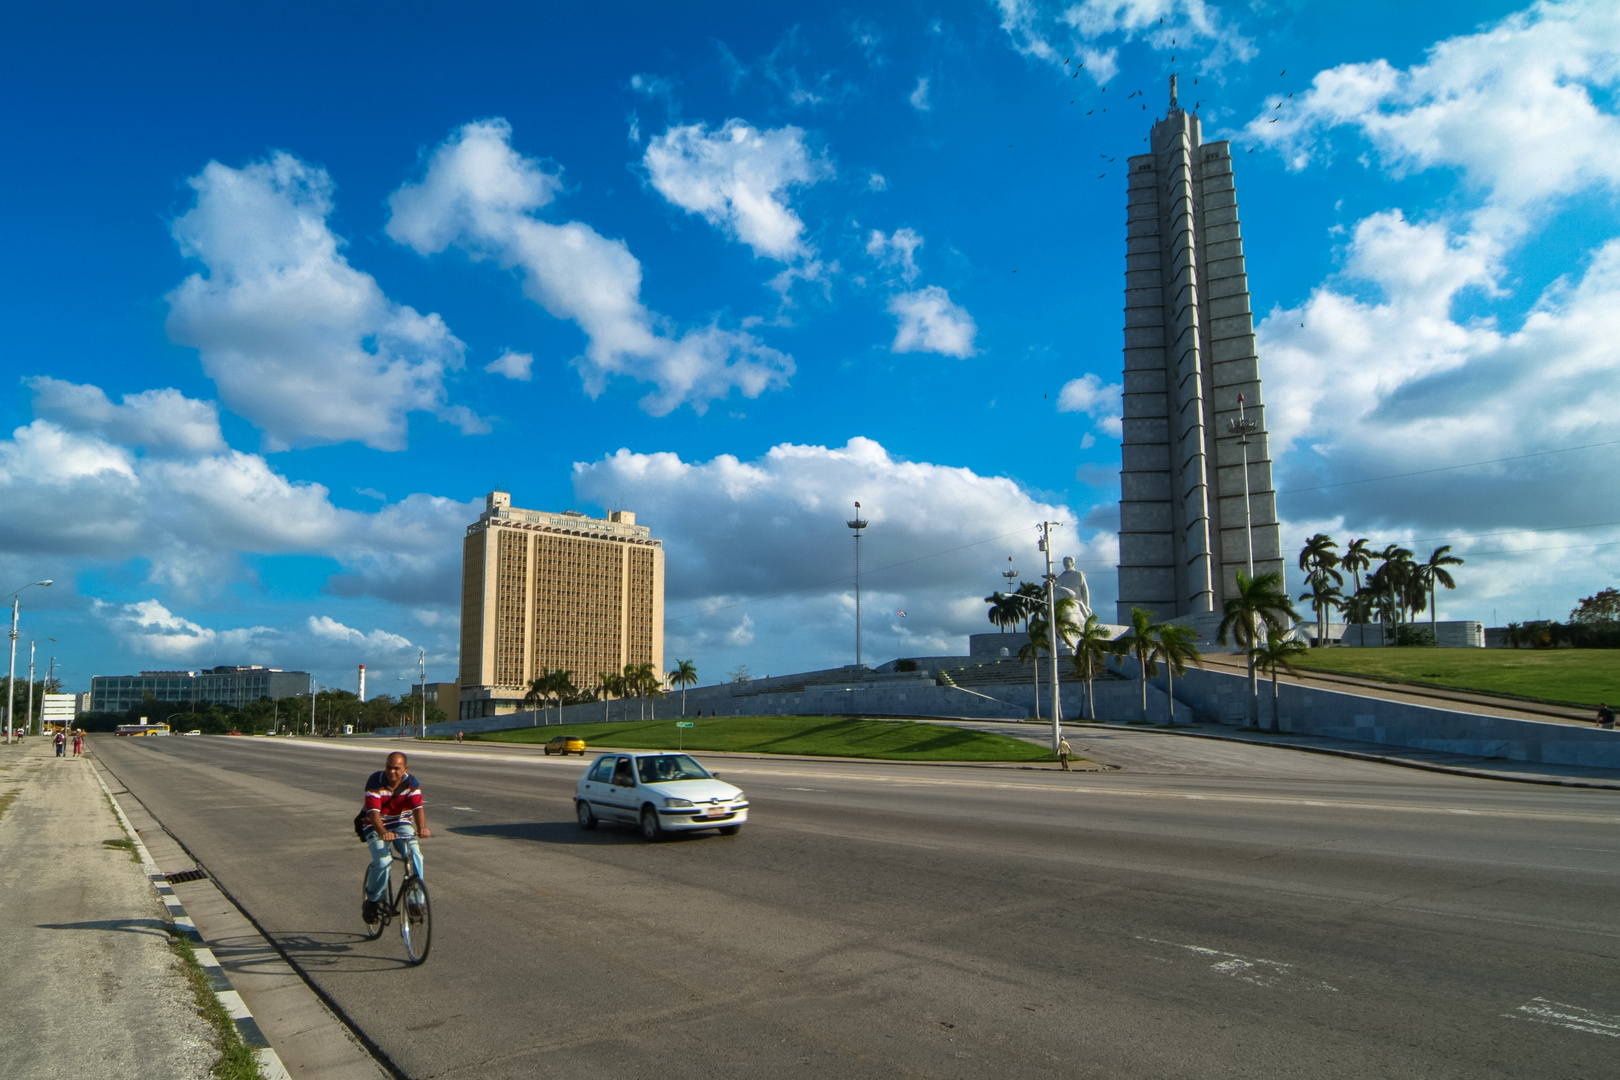 Kuba: Havanna, Plaza de la Revolucion